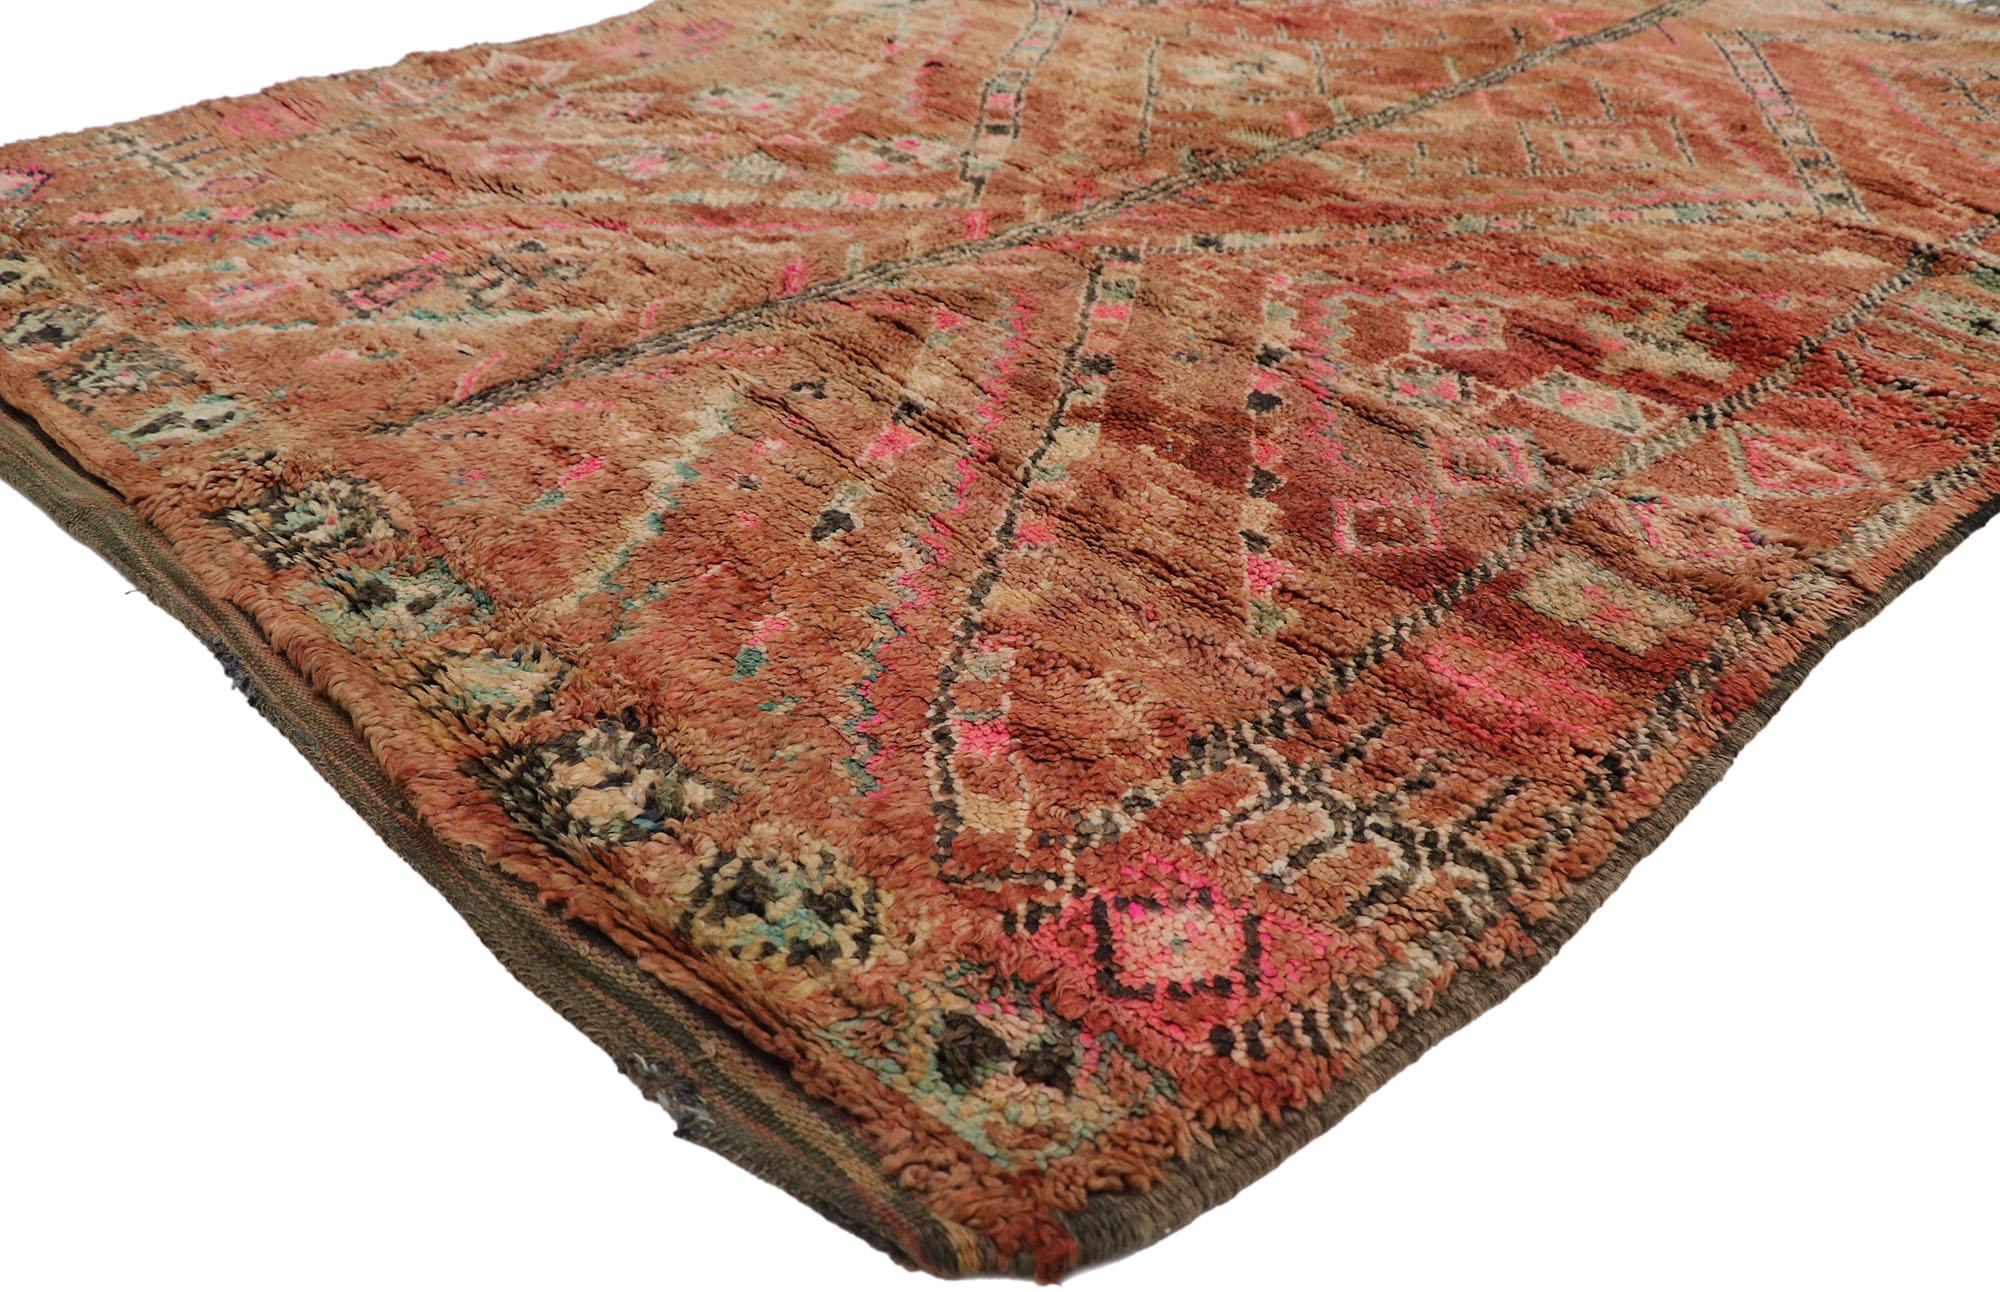 21236 Vintage Berber Boujad Marokkanischer Teppich mit Boho Chic Tribal Style 05'00 x 07'00. Dieser handgeknüpfte marokkanische Berberteppich Boujad aus Wolle mit seinem kühnen, ausdrucksstarken Design, seinen unglaublichen Details und seiner Textur